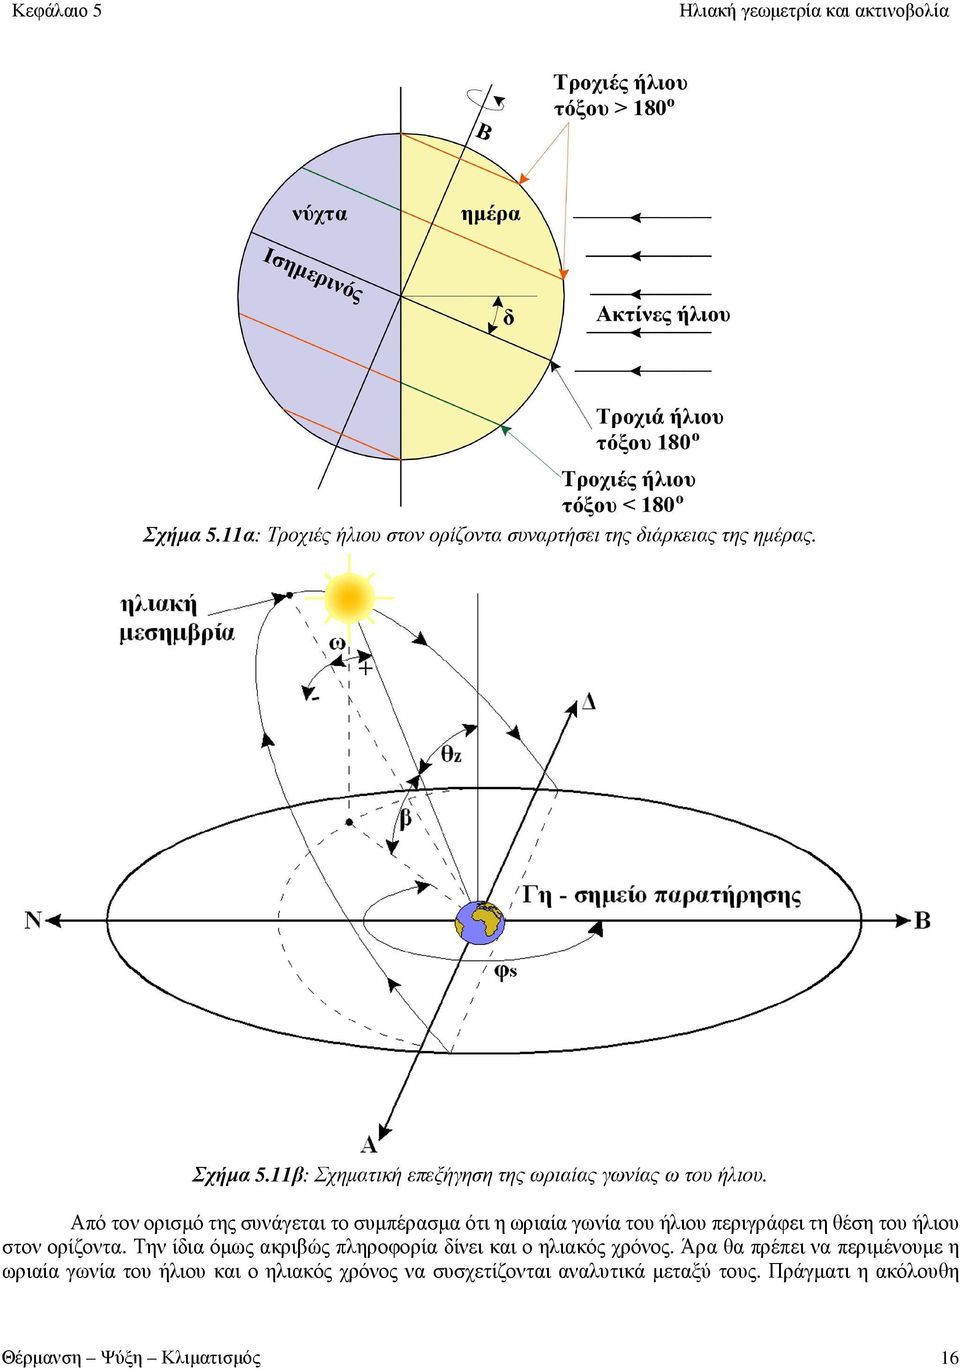 Από τον ορισμό της συνάγεται το συμπέρασμα ότι η ωριαία γωνία του ήλιου περιγράφει τη θέση του ήλιου στον ορίζοντα.